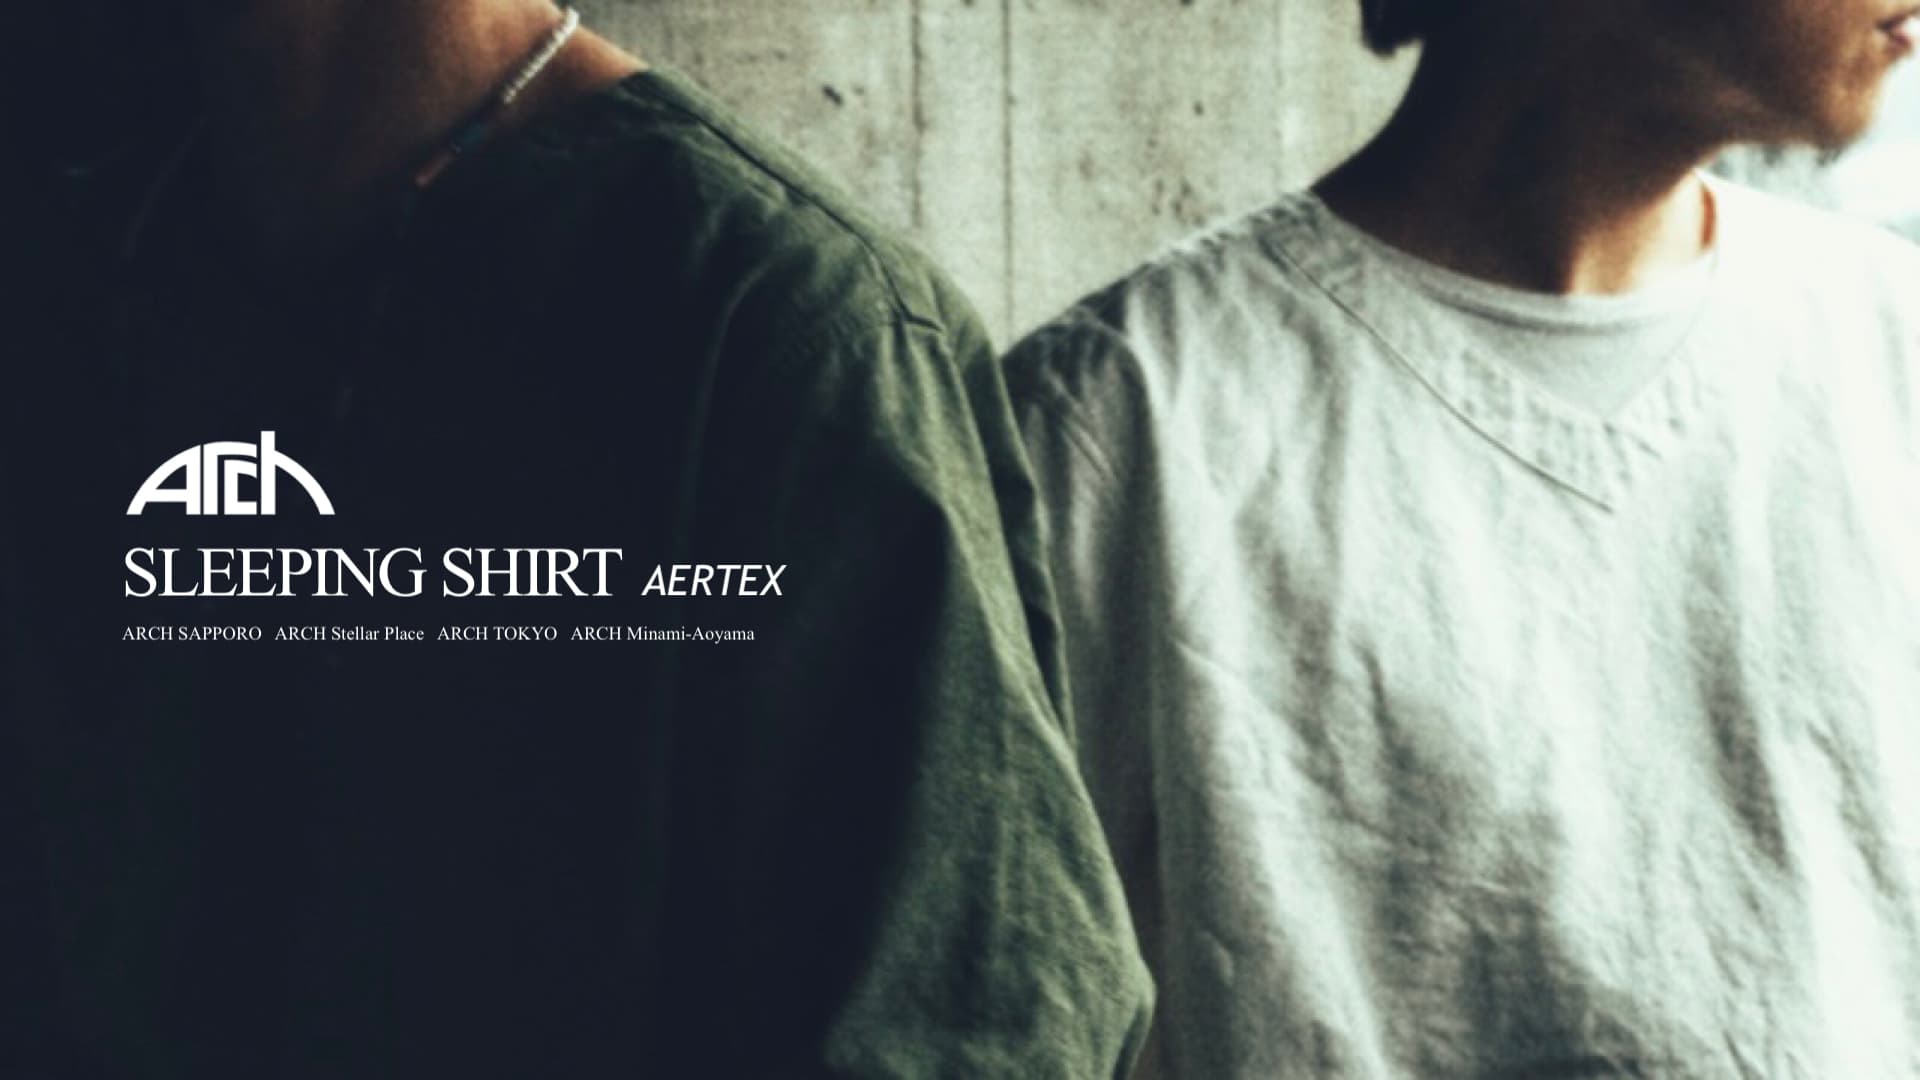 Arch SLEEPING SHIRT AERTEX